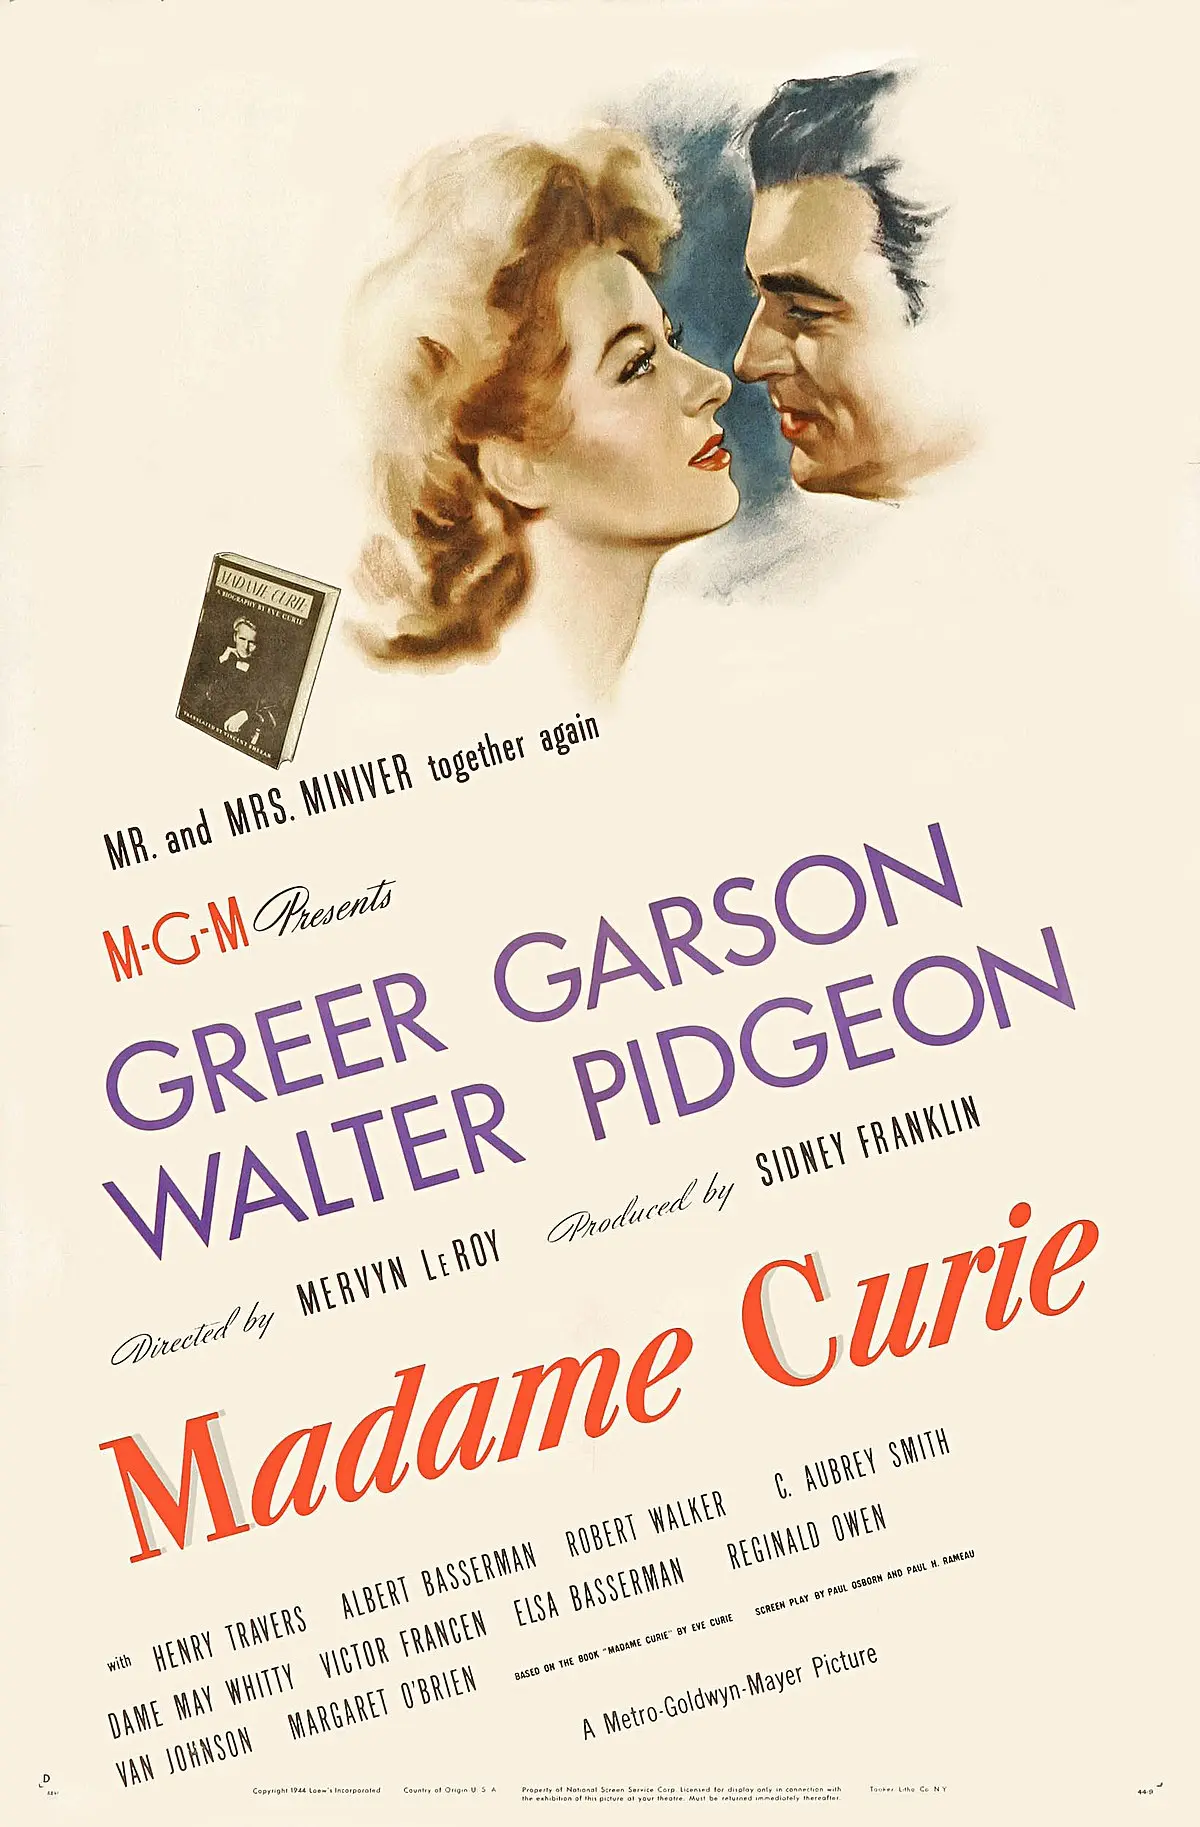 resumen de la película de marie curie - Quién fue Marie Curie en la película